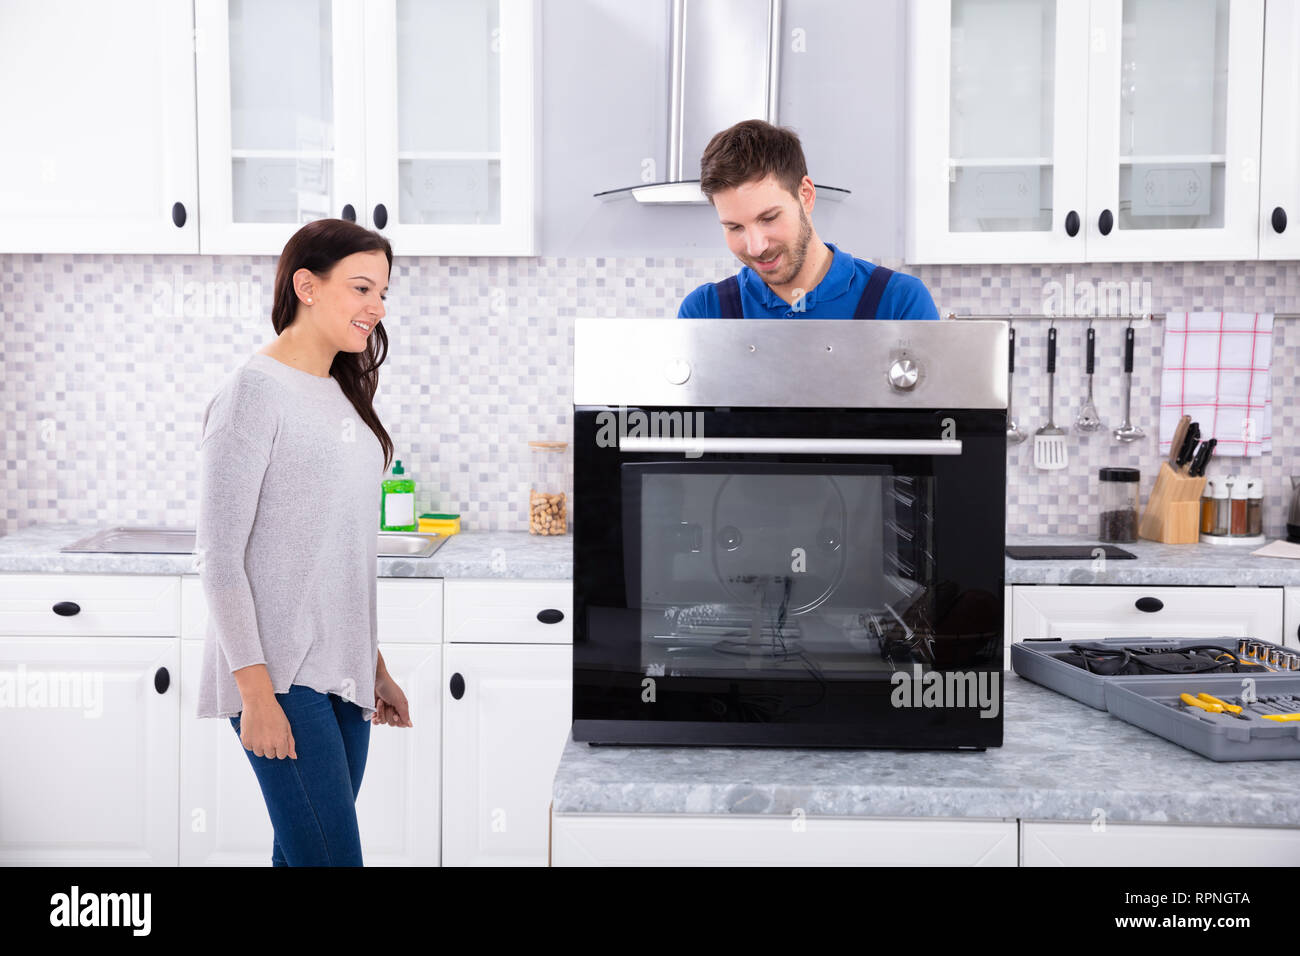 Lächelnd Handwerker Instandsetzung Backofen auf der Küchenarbeitsplatte Vor Frau Stockfoto